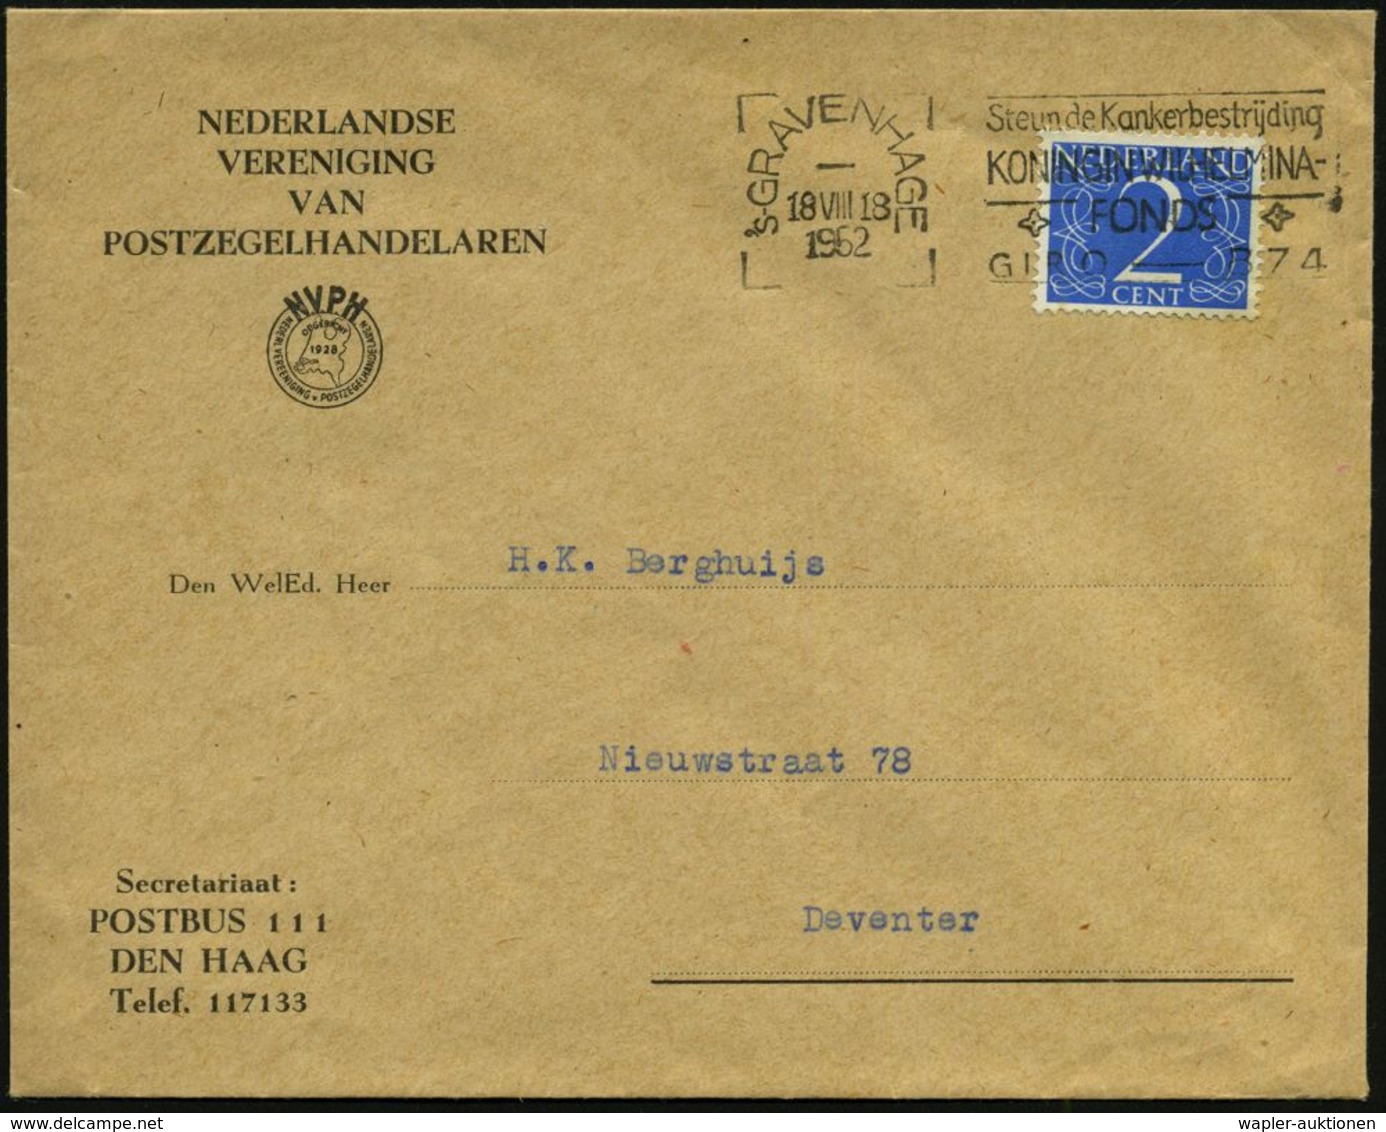 KRANKHEITEN : NIEDERLANDE 1962 (Aug.) MWSt.: 's-GRAVENHAGE/Steun De Kankerbestrijding/KONINGIN WILHELMINA/FOND (Antl-Kre - Maladies